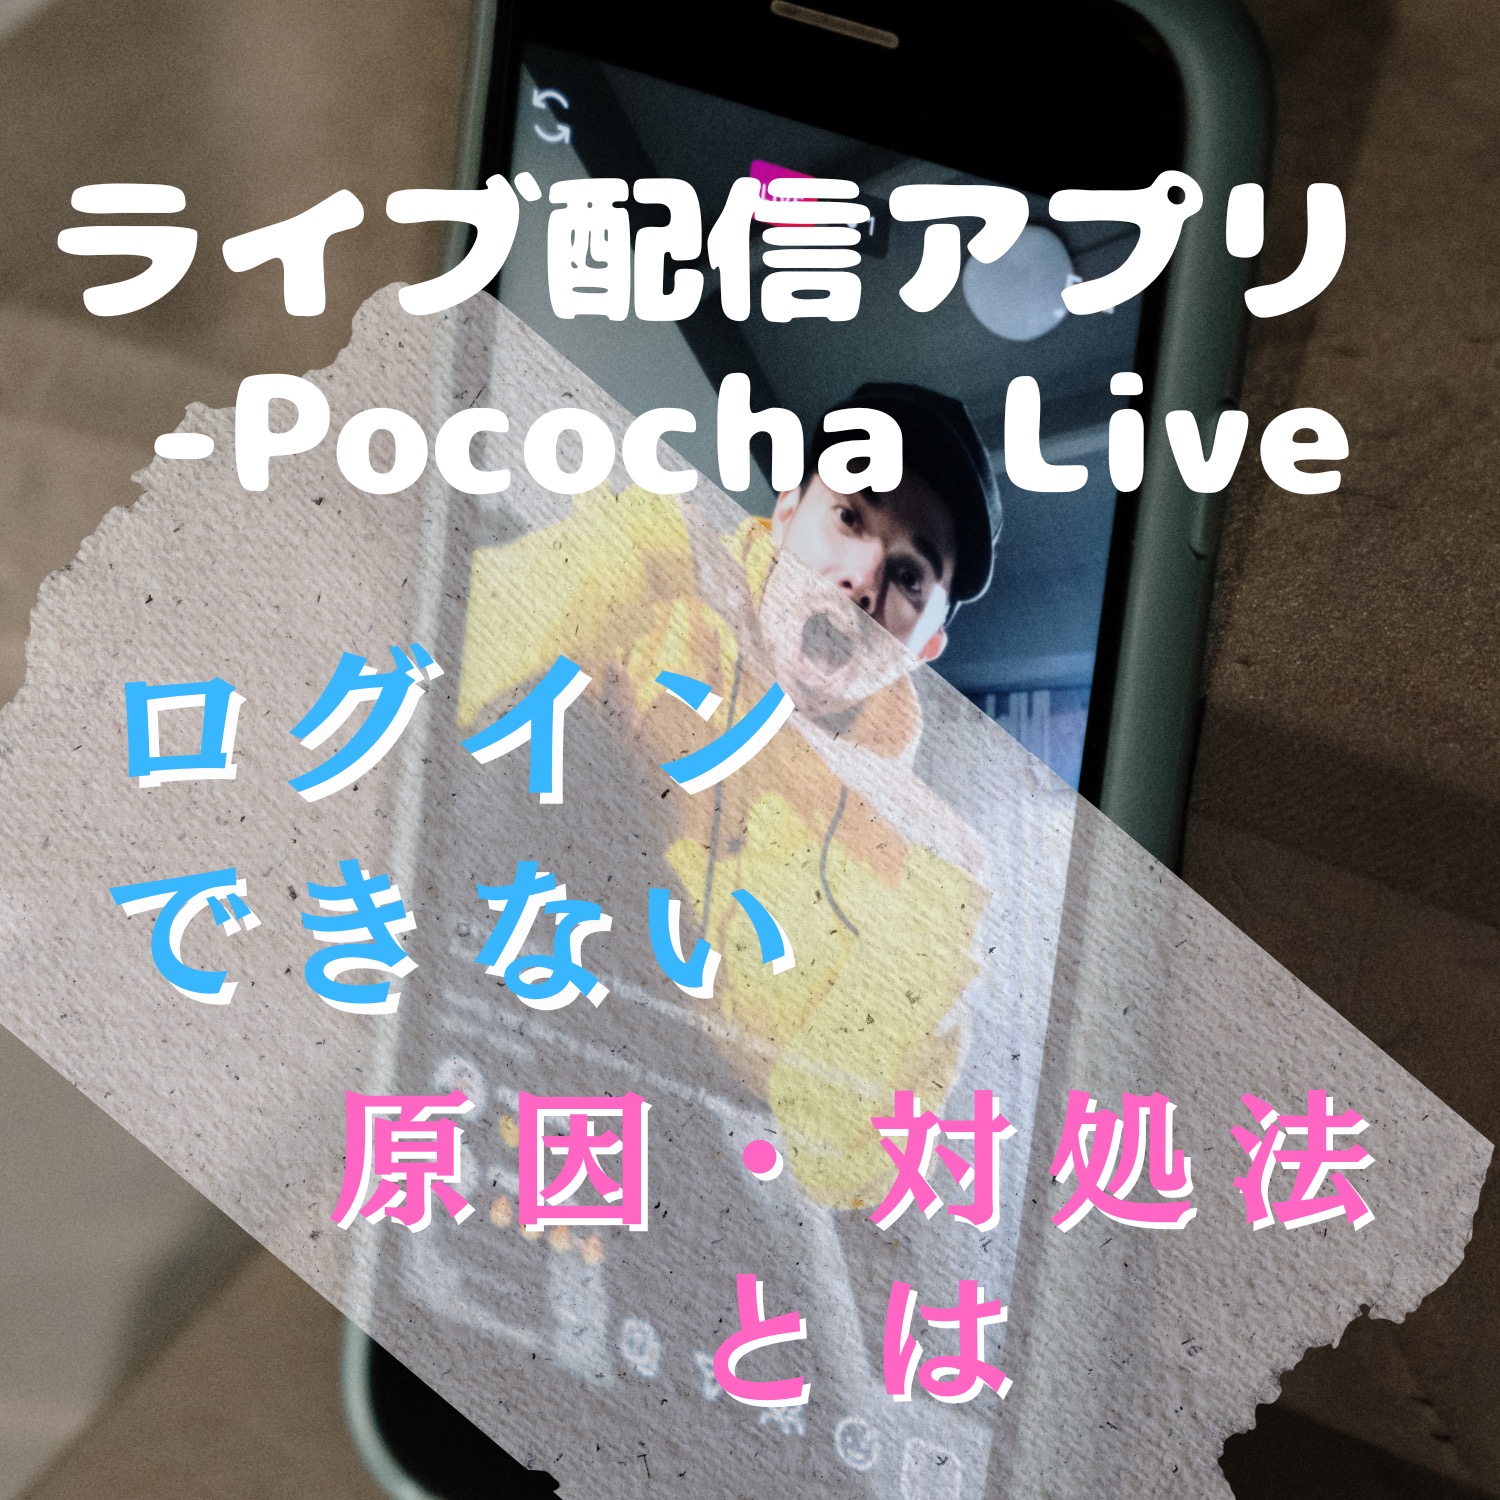 ライブ配信アプリ - Pococha Liveにログインできない原因と対処法とは #ライブ配信アプリ - Pococha Live